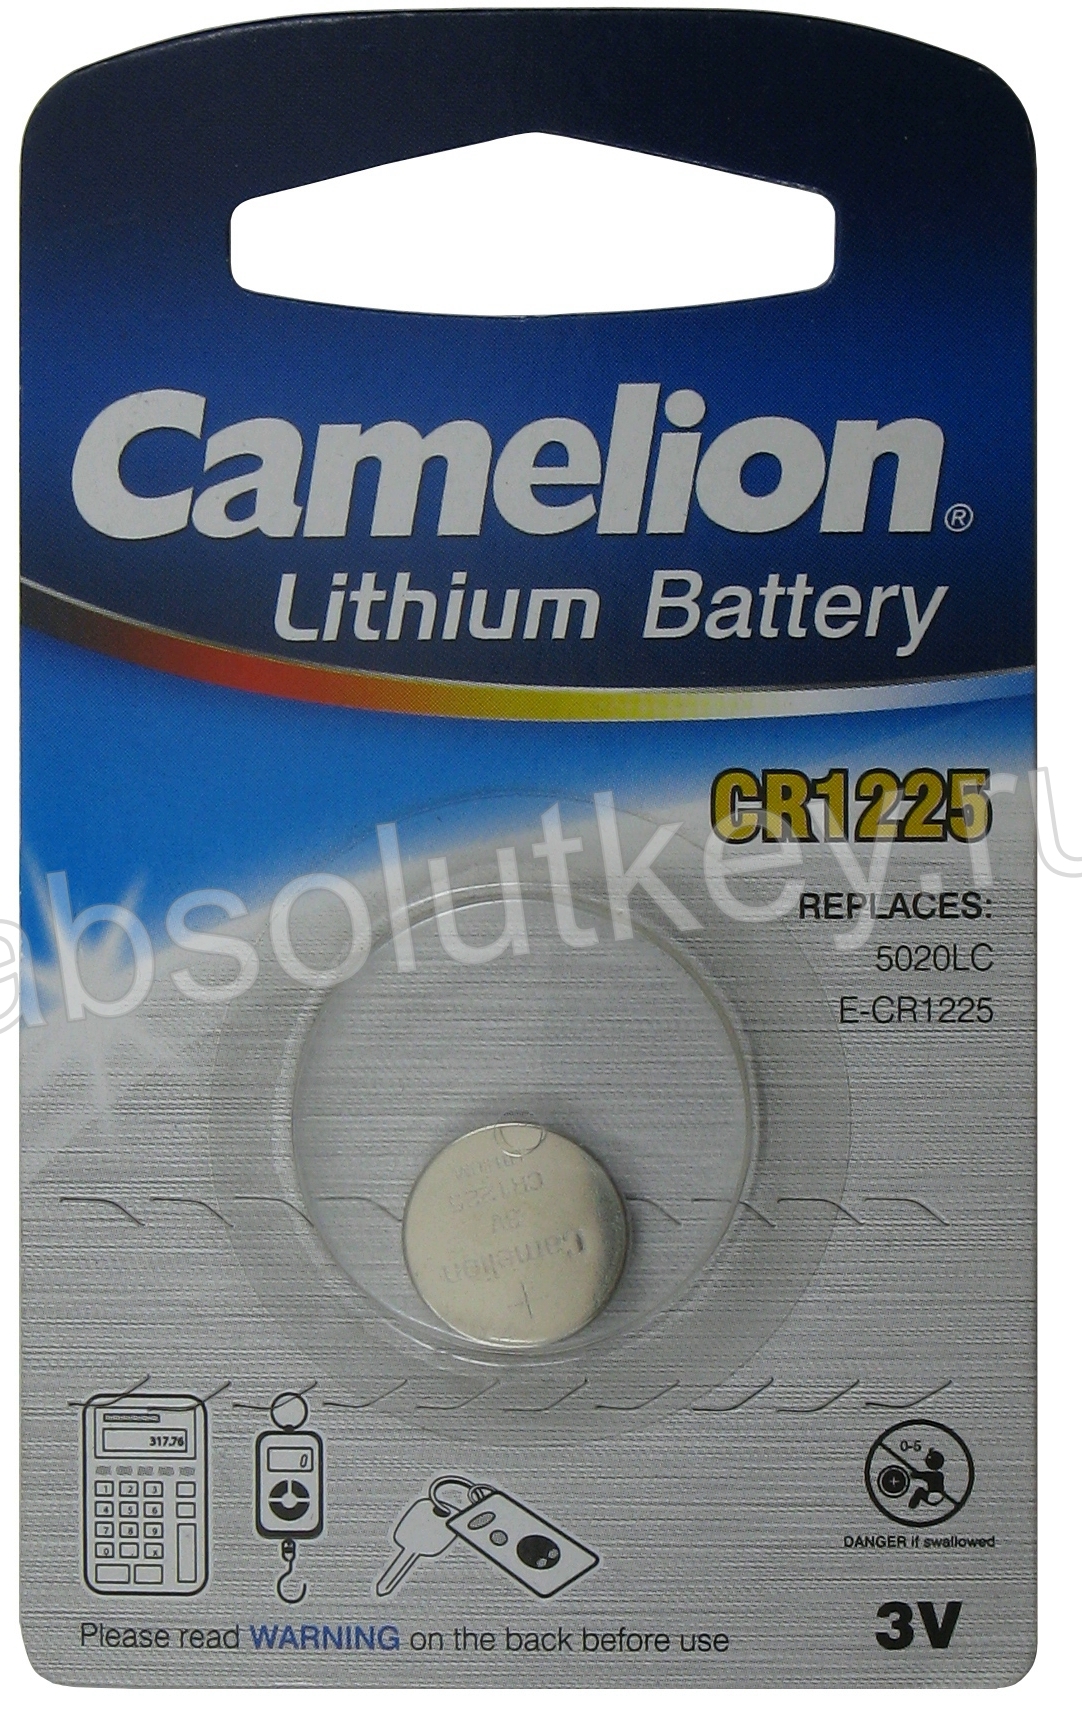 Camelion CR1225